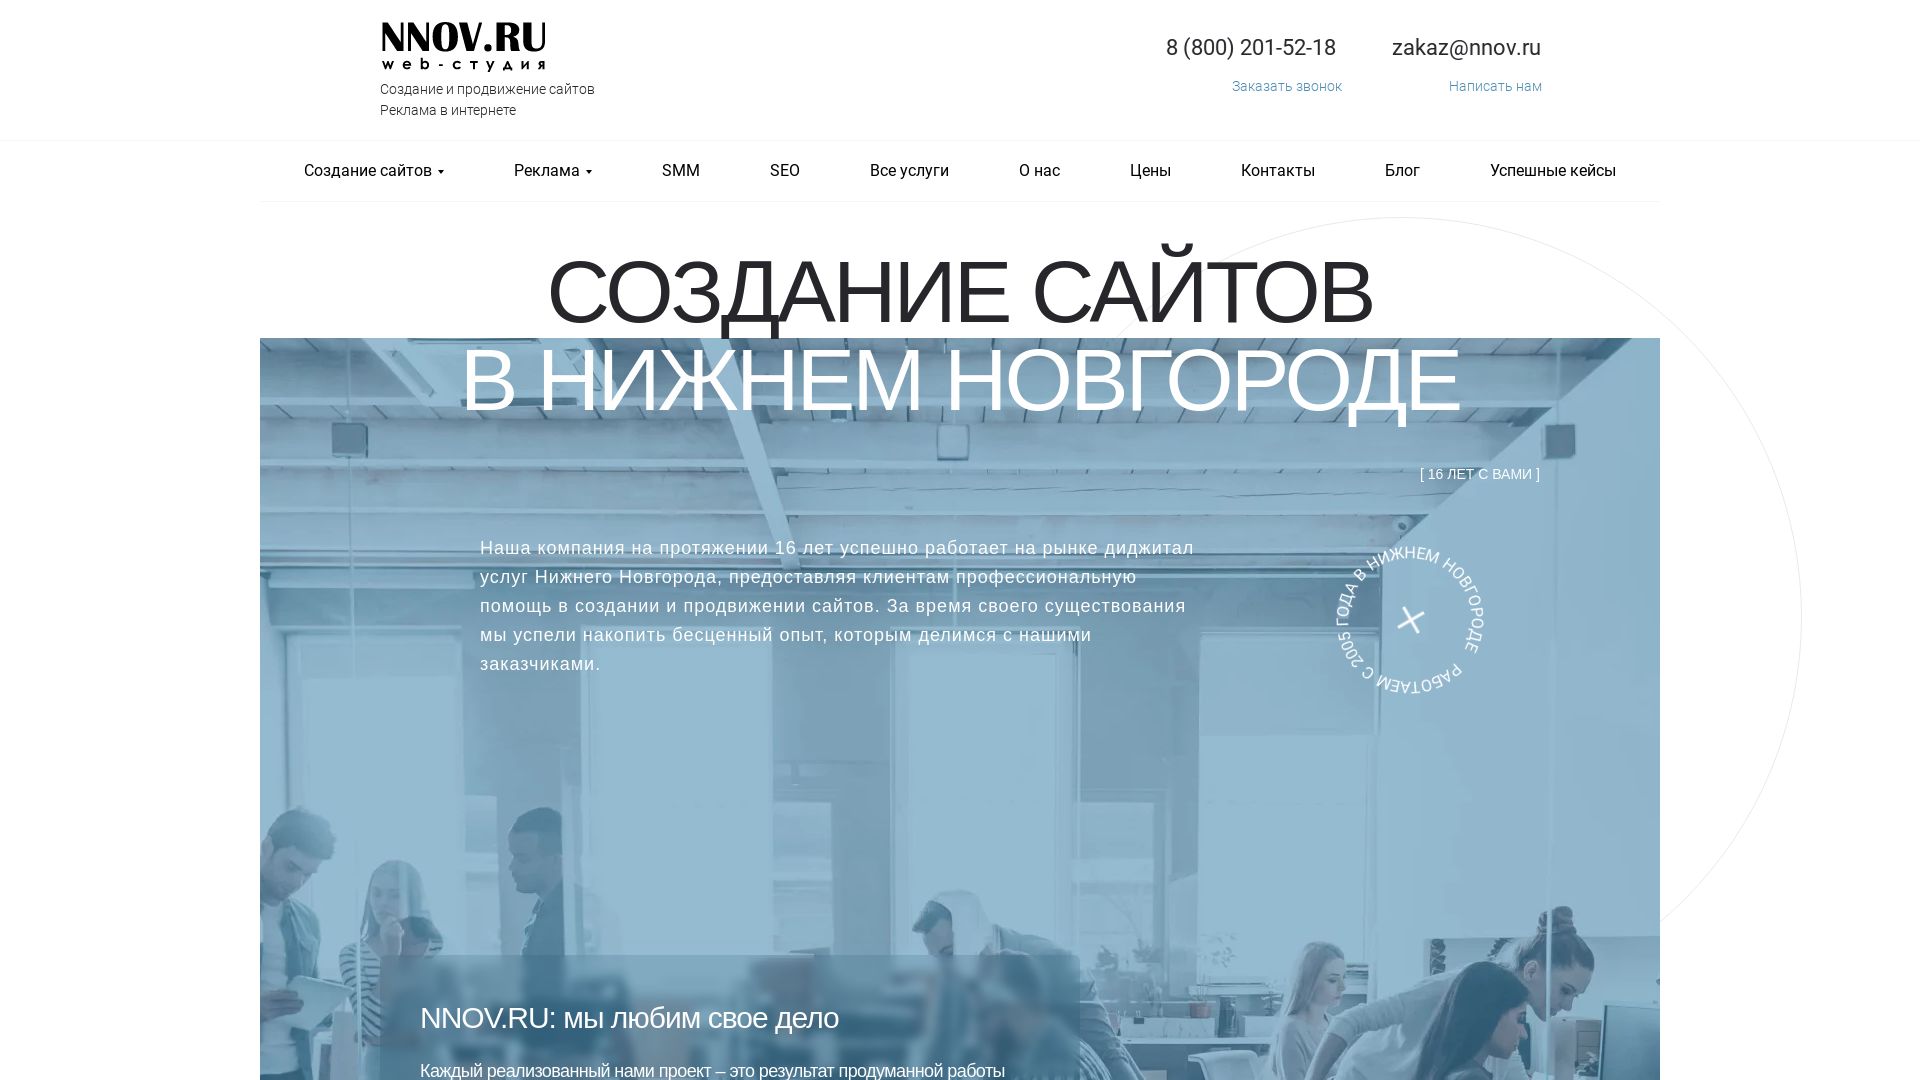 Estado web nnov.ru está   ONLINE